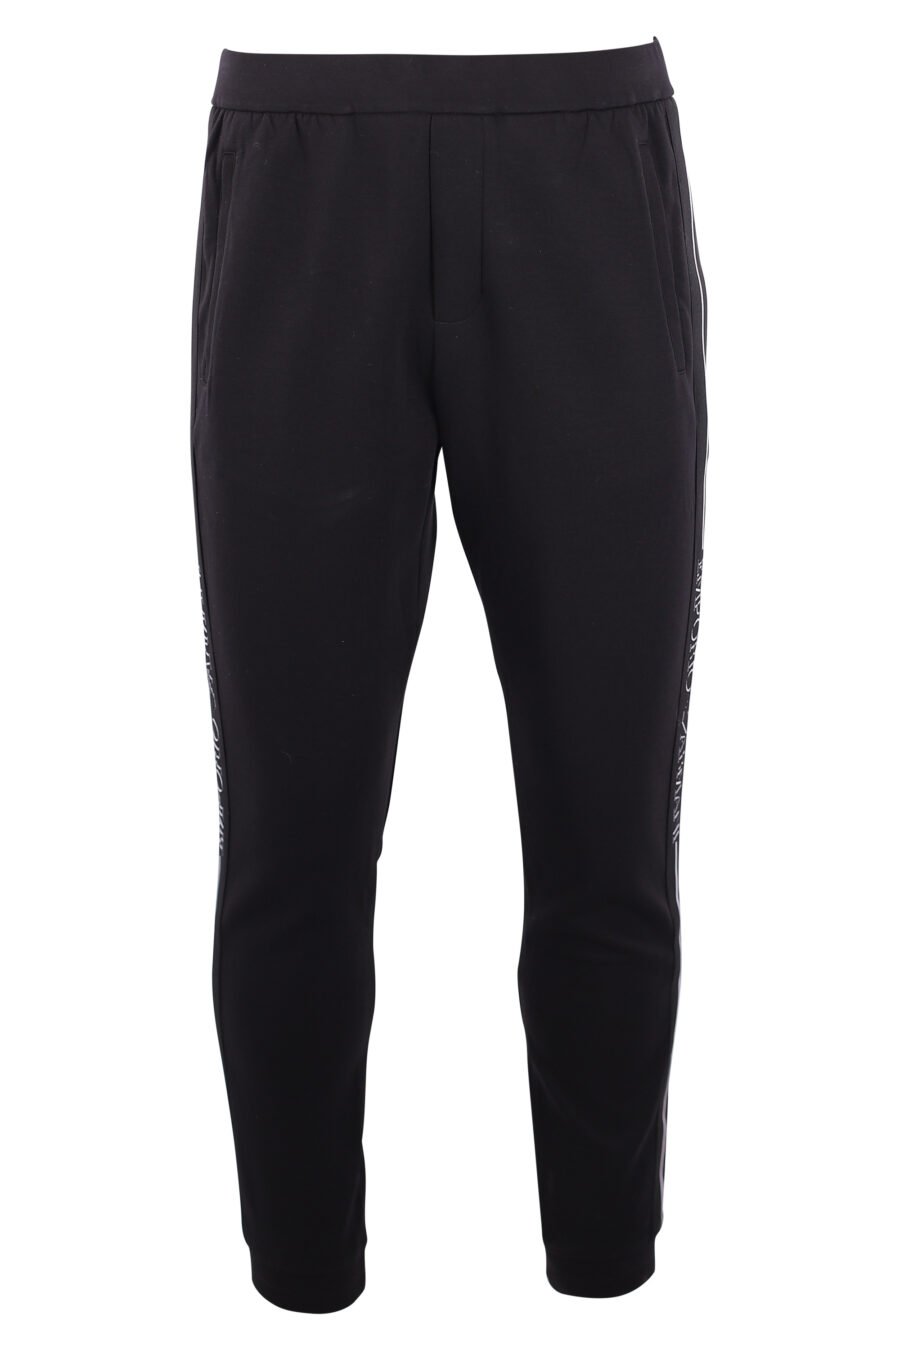 Pantalón de chándal negro con logo vertical lateral - IMG 3165 copia